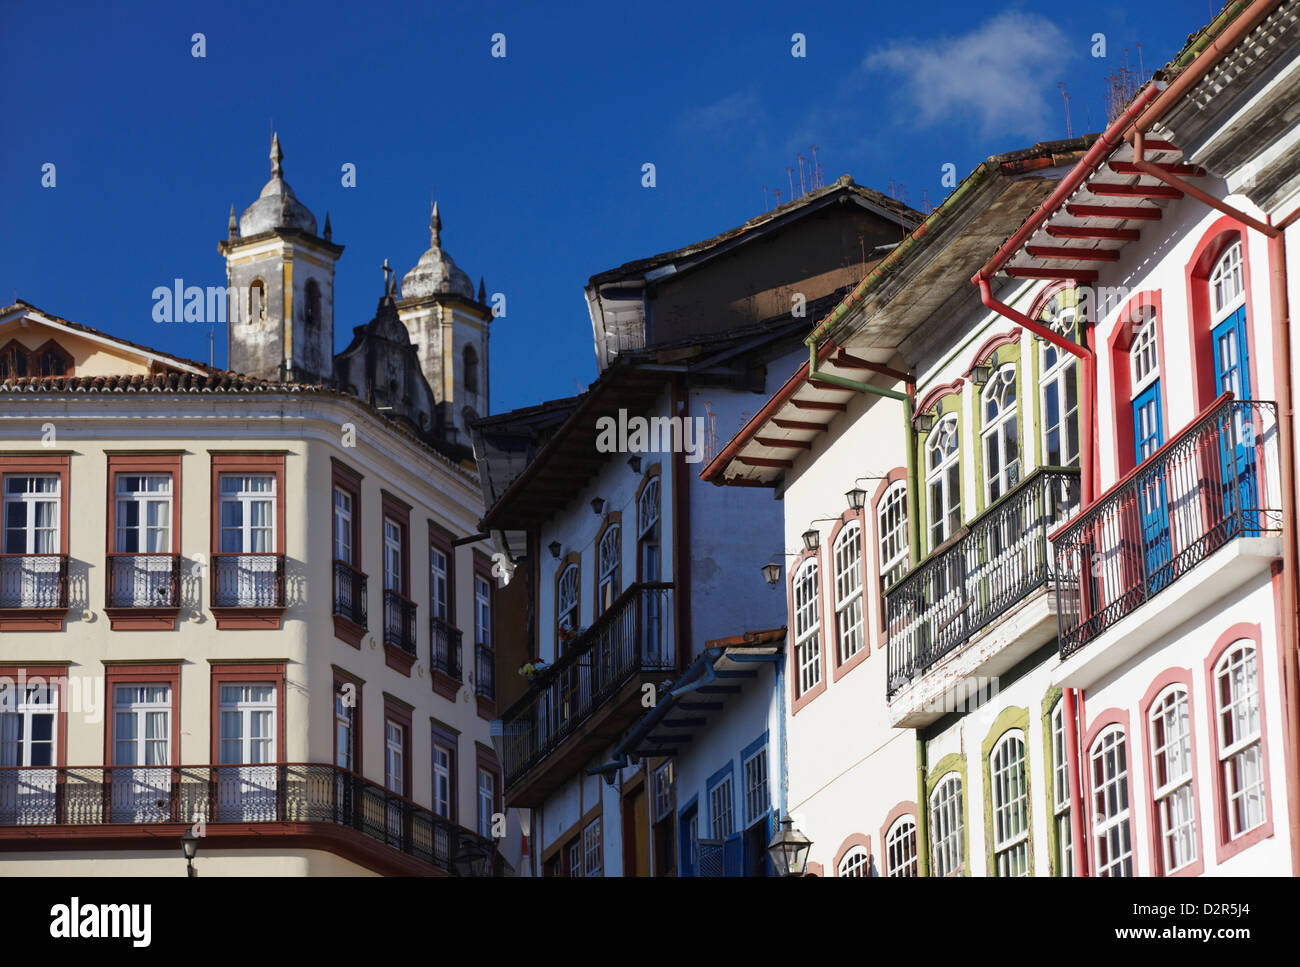 L'architecture coloniale dans la région de Largo do Rosario (Rosario Square), Ouro Preto, Minas Gerais, Brésil Banque D'Images